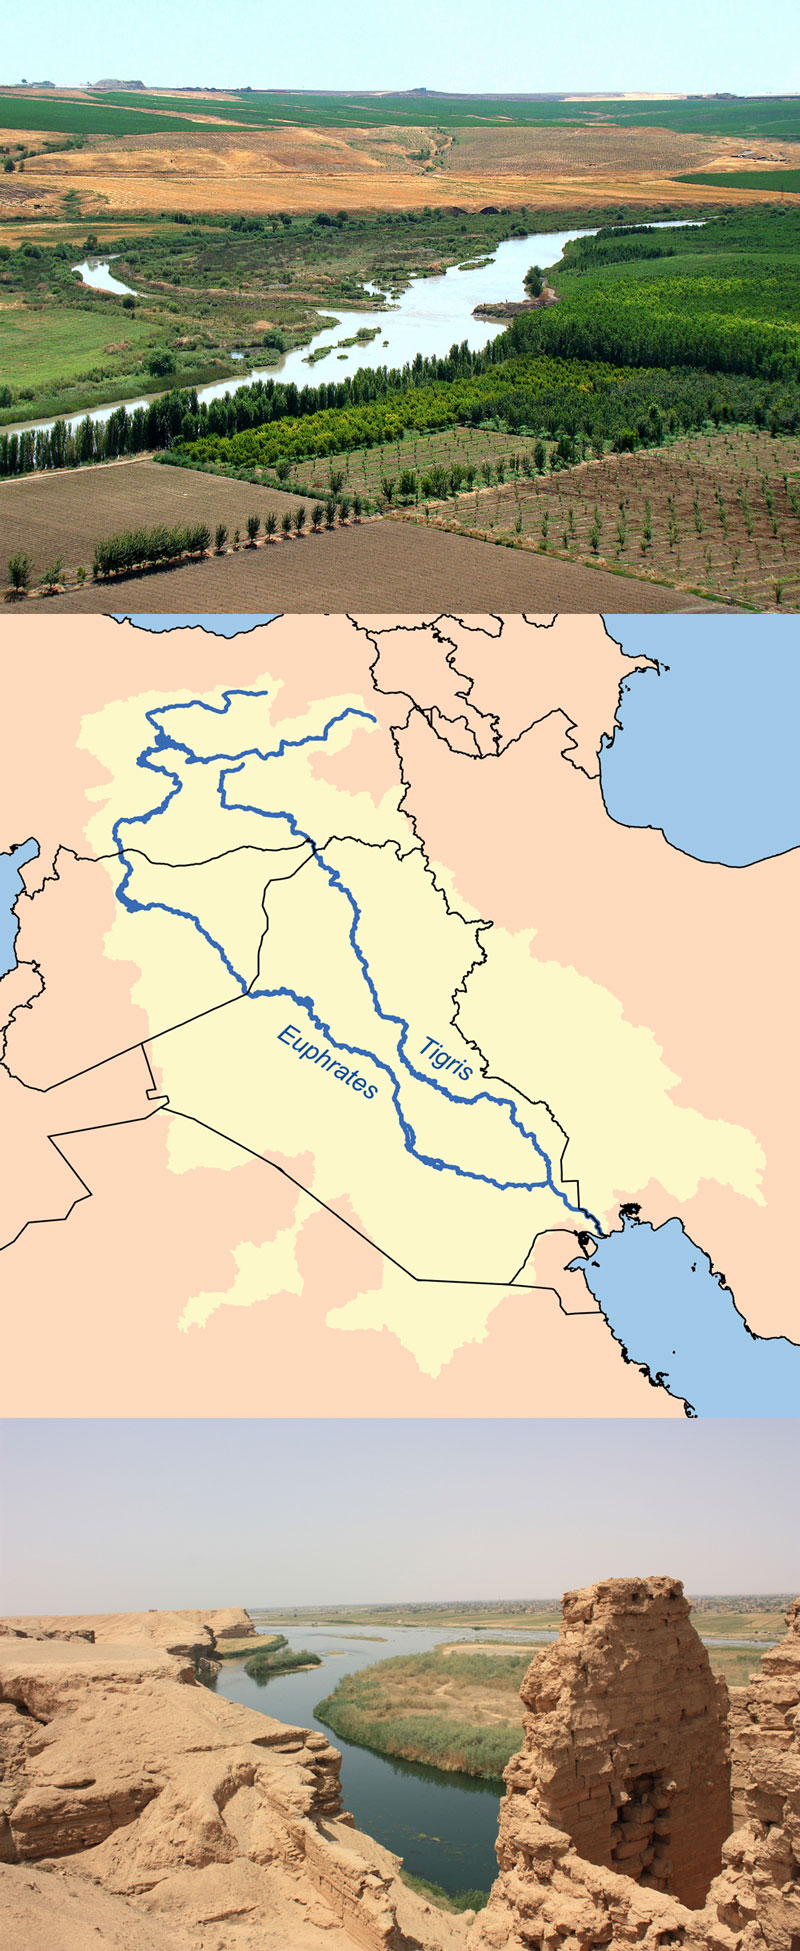 Fakta: Tigris og Eufrat er to floder i Irak.